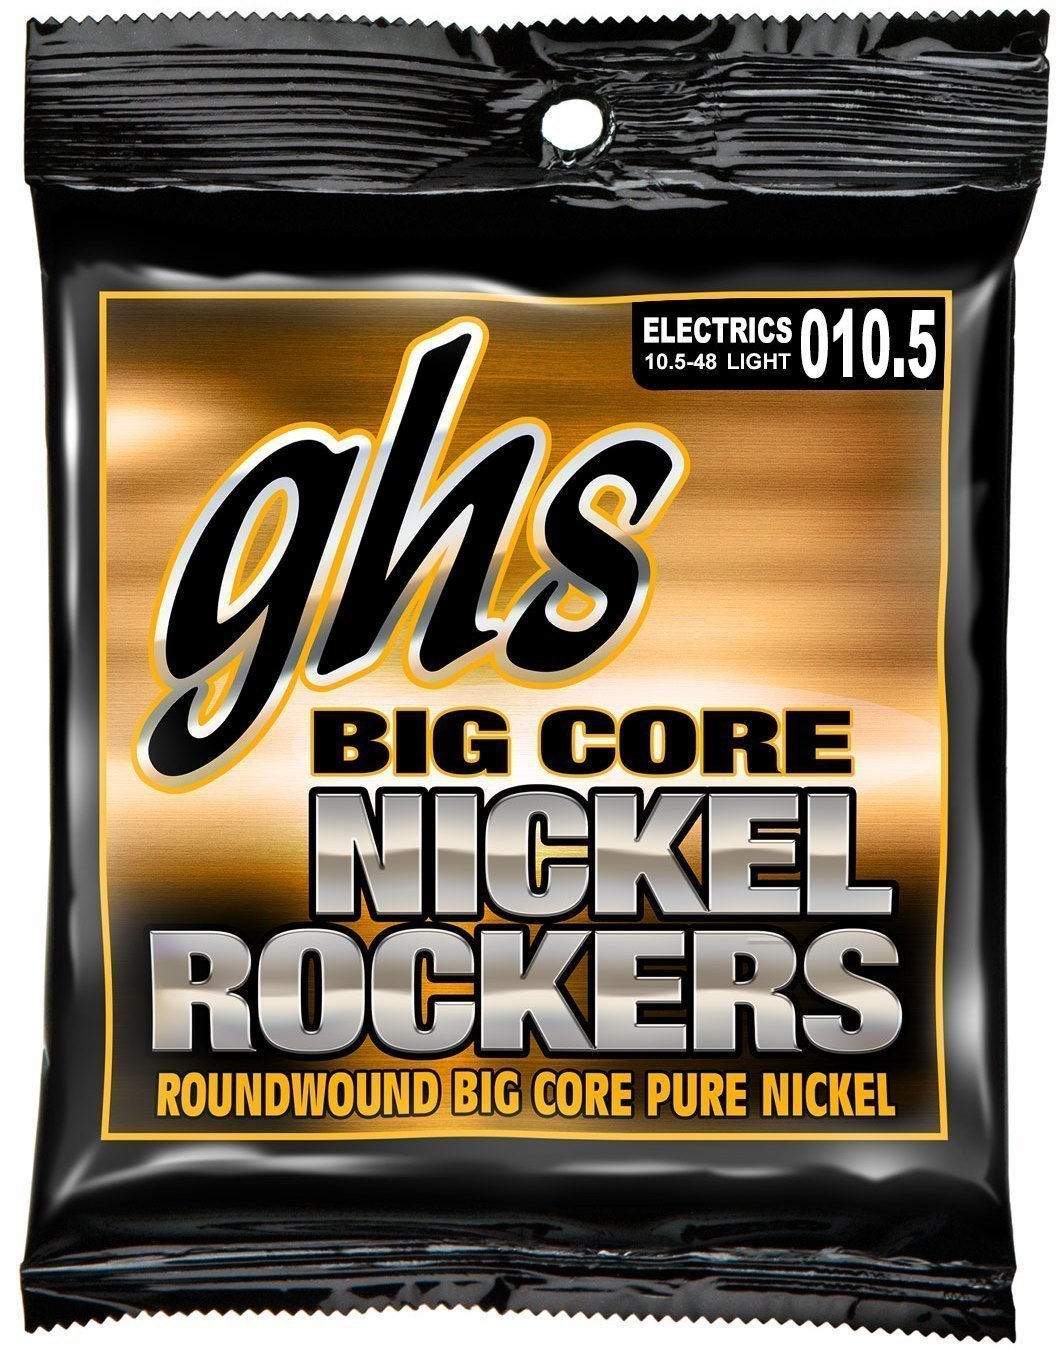 Struny do gitary elektrycznej GHS Big Core Nickel Rockers 10,5-48